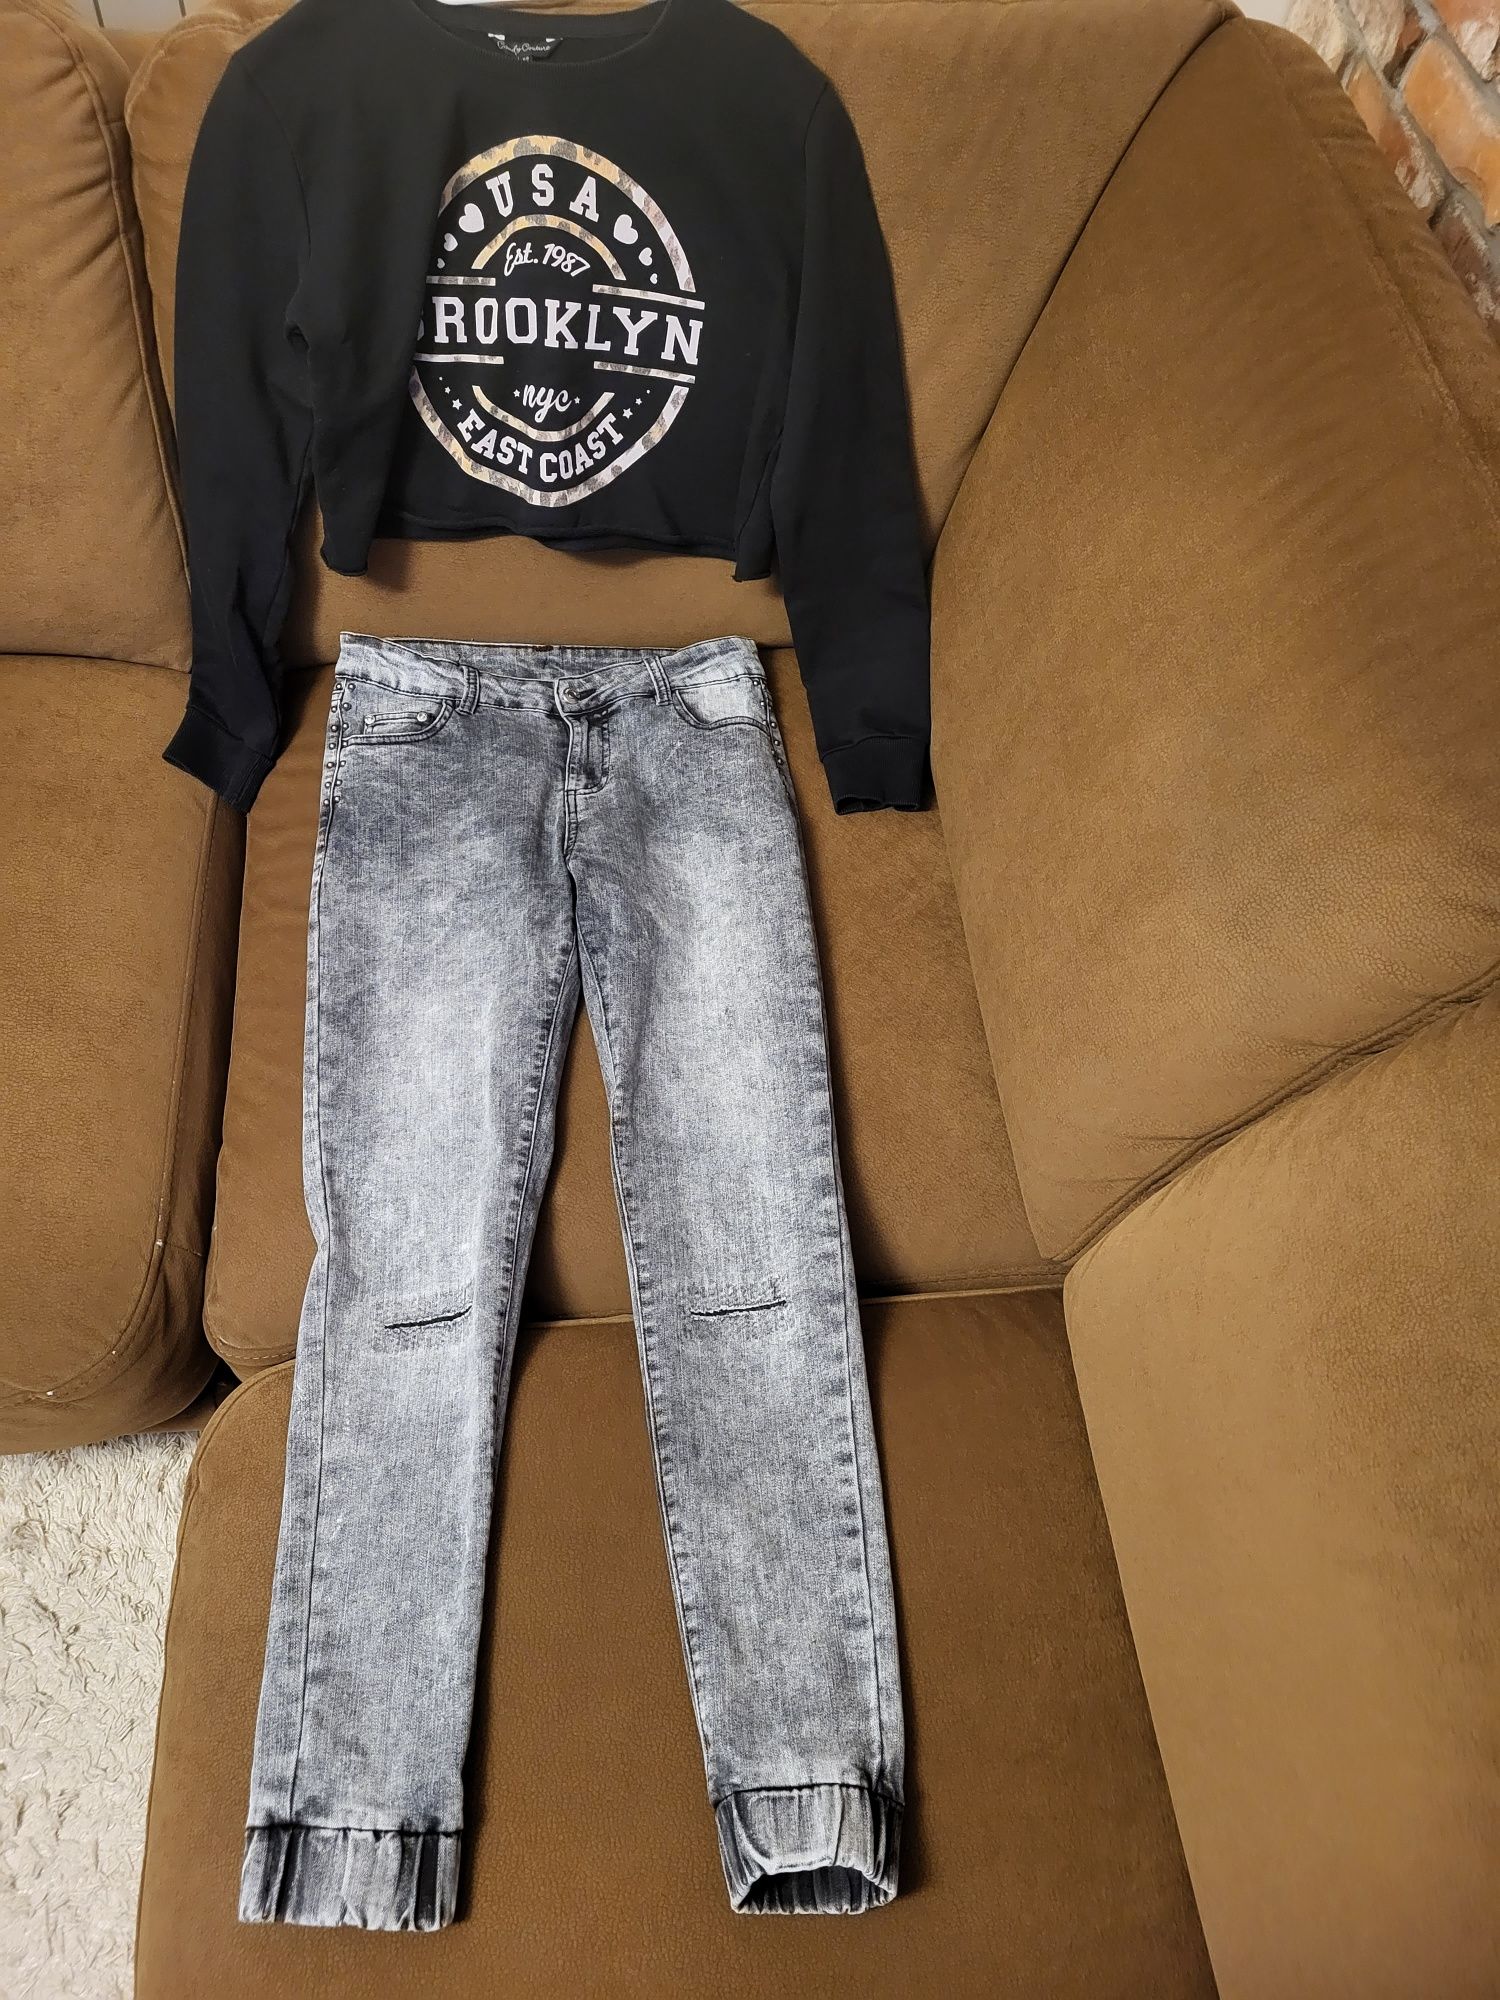 Spodnie i krótka bluza dla dziewczynki rozmiar 164